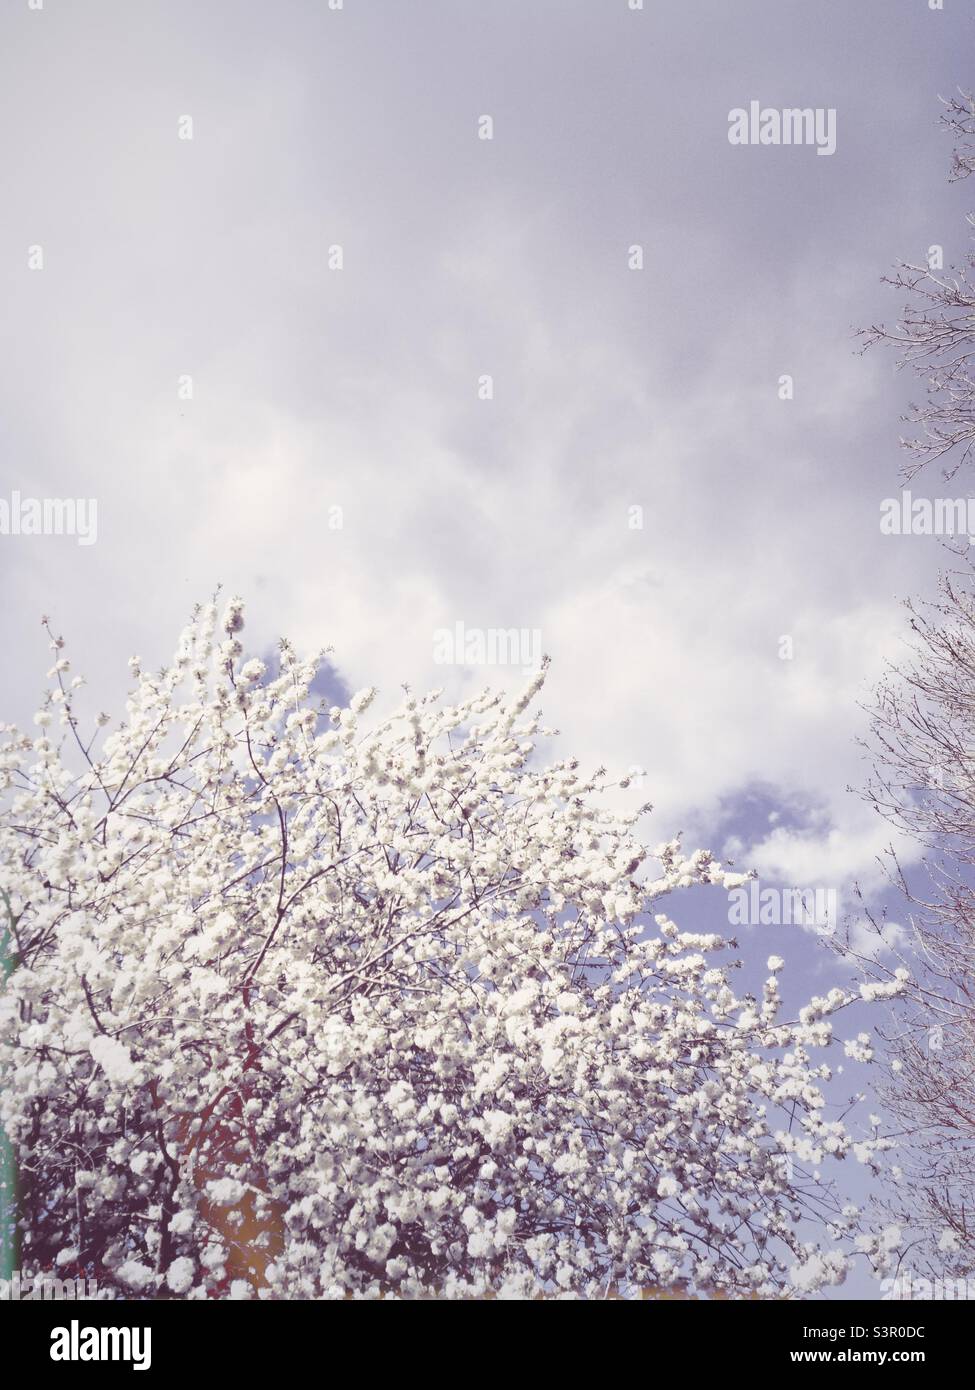 Fleurs blanches sur les arbres au printemps avec des nuages blancs dans le ciel. Image d'arrière-plan blanche avec thème de la nature et espace de copie pour les mots Banque D'Images